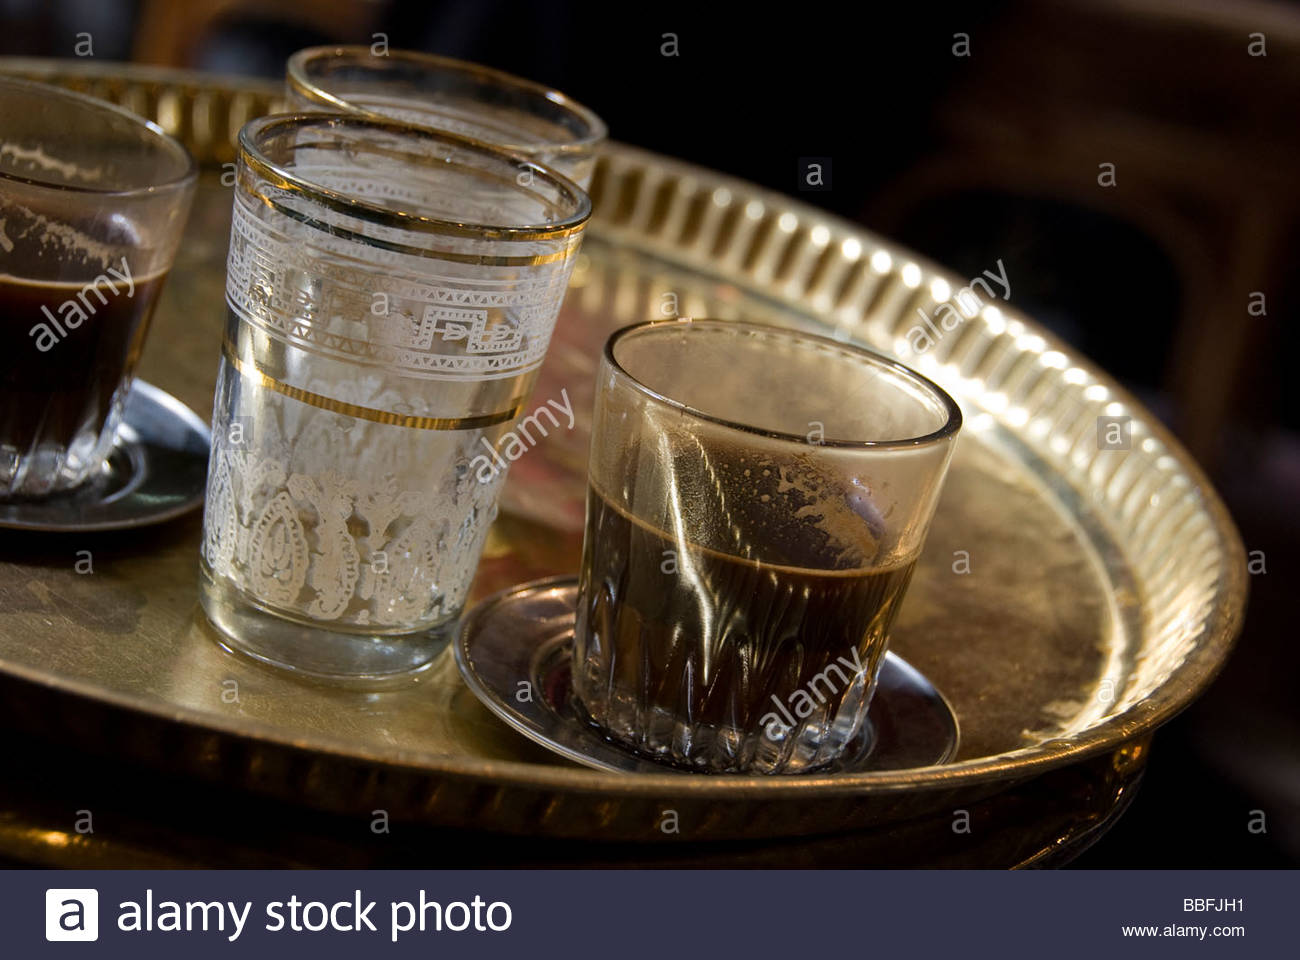 agyptische-kaffee-serviert-in-einem-caf-